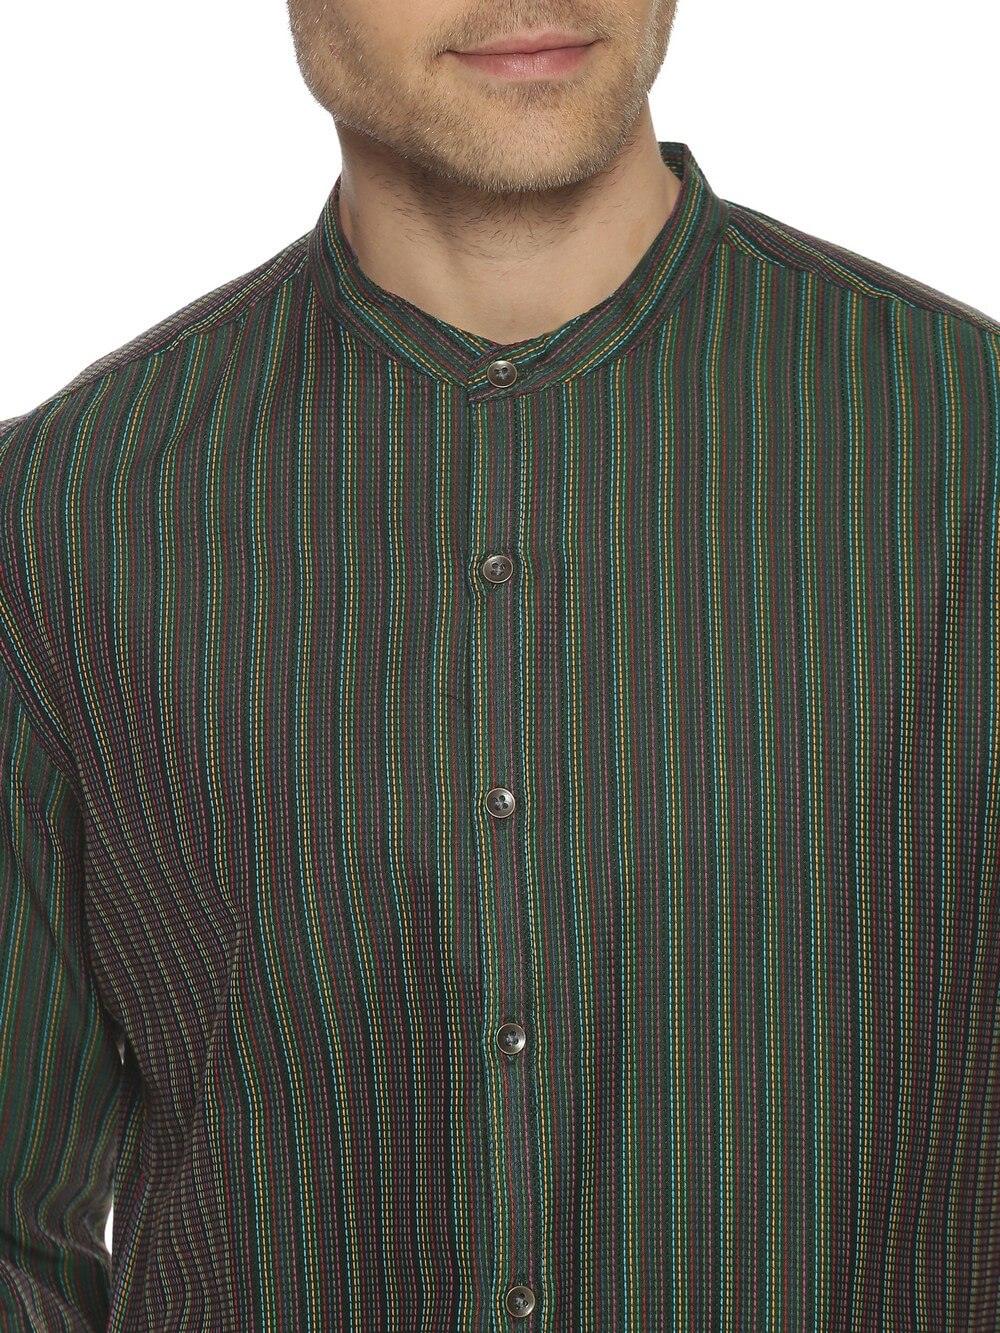 Jacquard Woven Sacramento Green Men Slim Fit Full sleeves Shirt WeaversKnot 